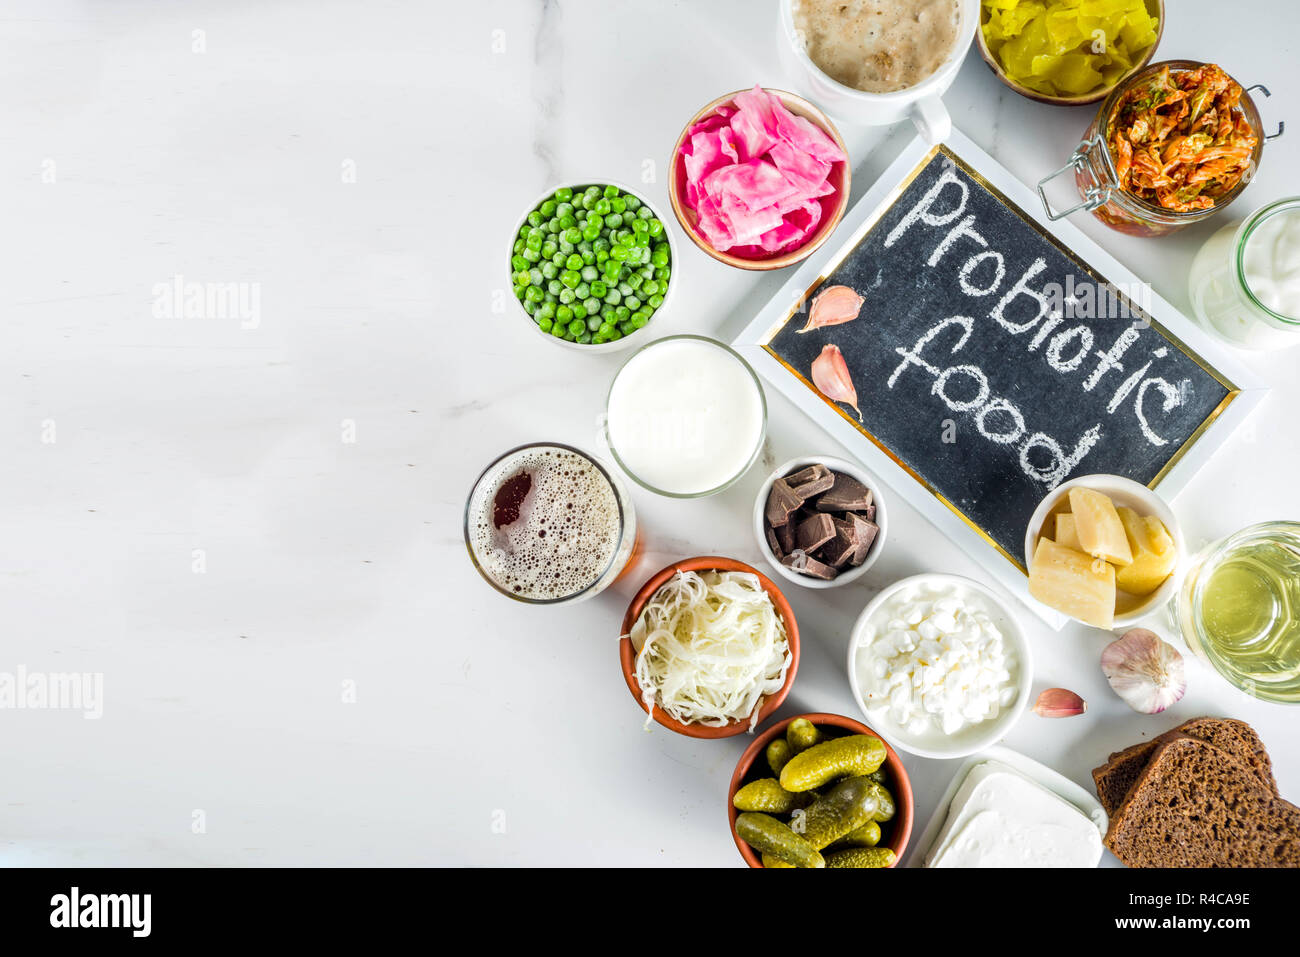 Super gesunden probiotischen fermentierter Lebensmittel, Getränke, Zutaten, auf weißem Hintergrund Kopie Raum, Ansicht von oben Stockfoto